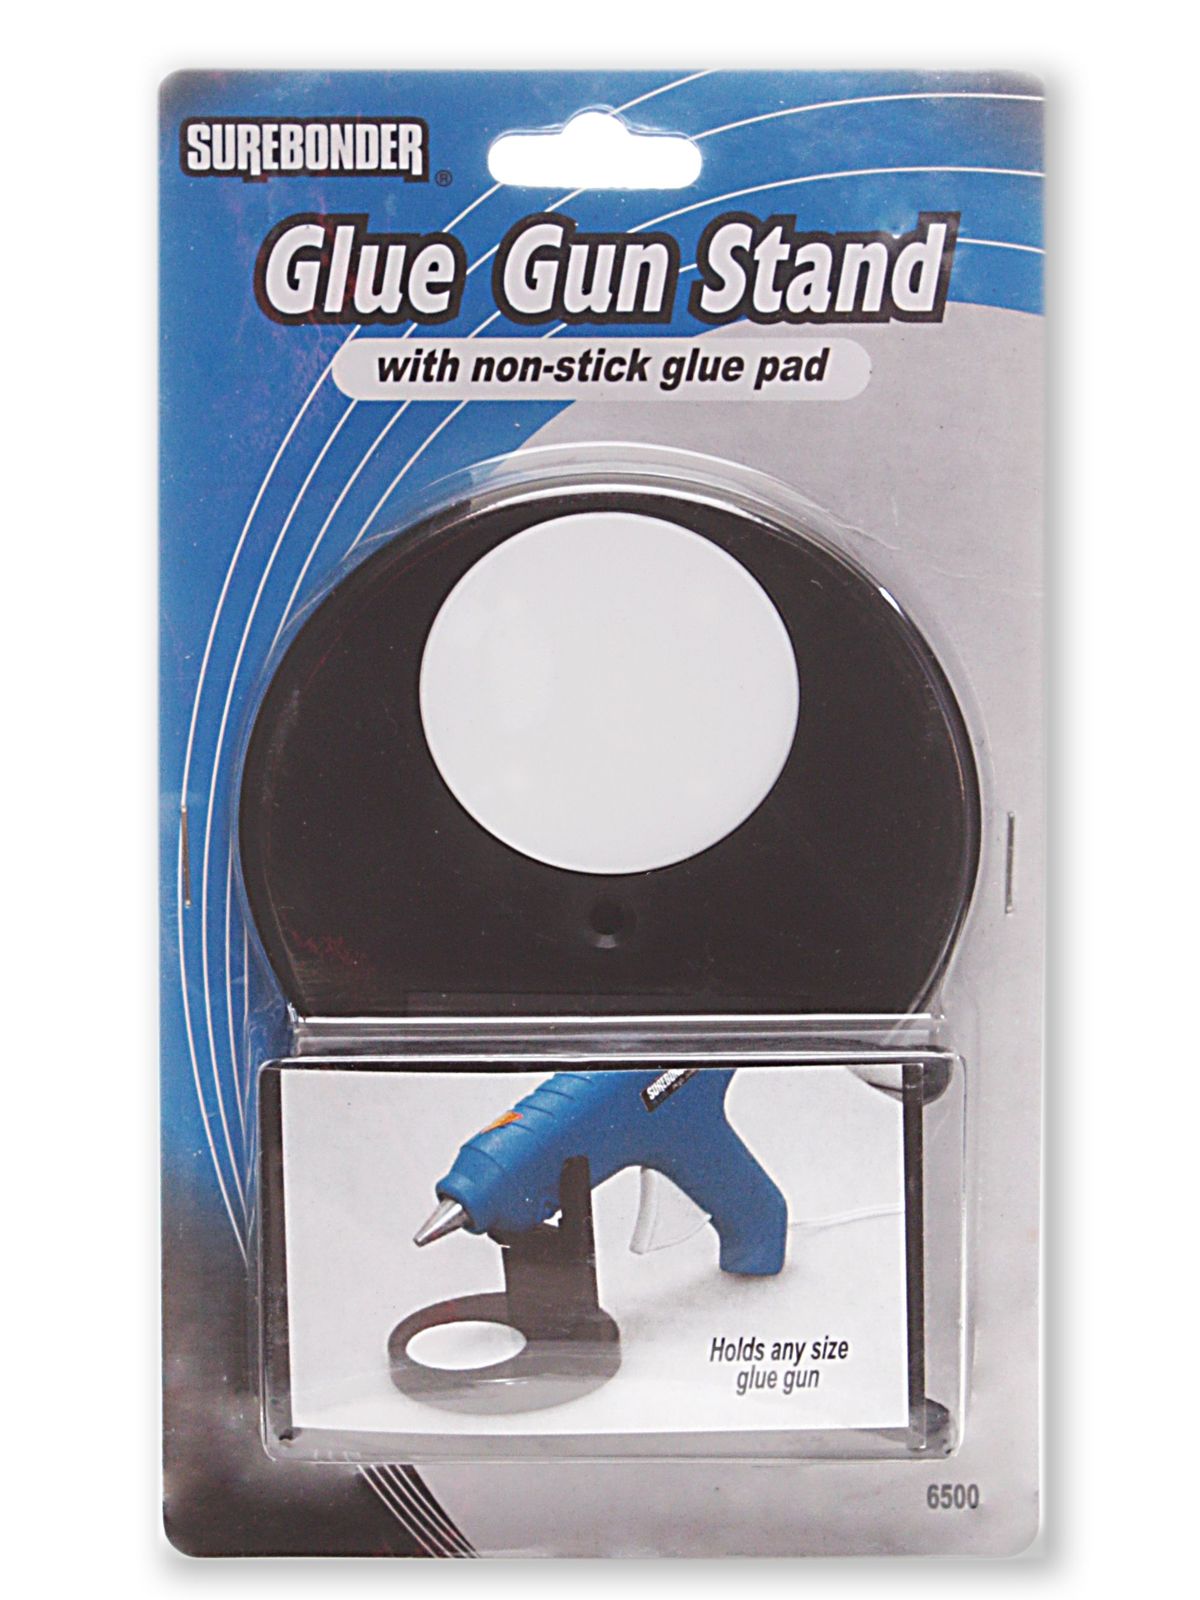 Glue Gun Stand Each